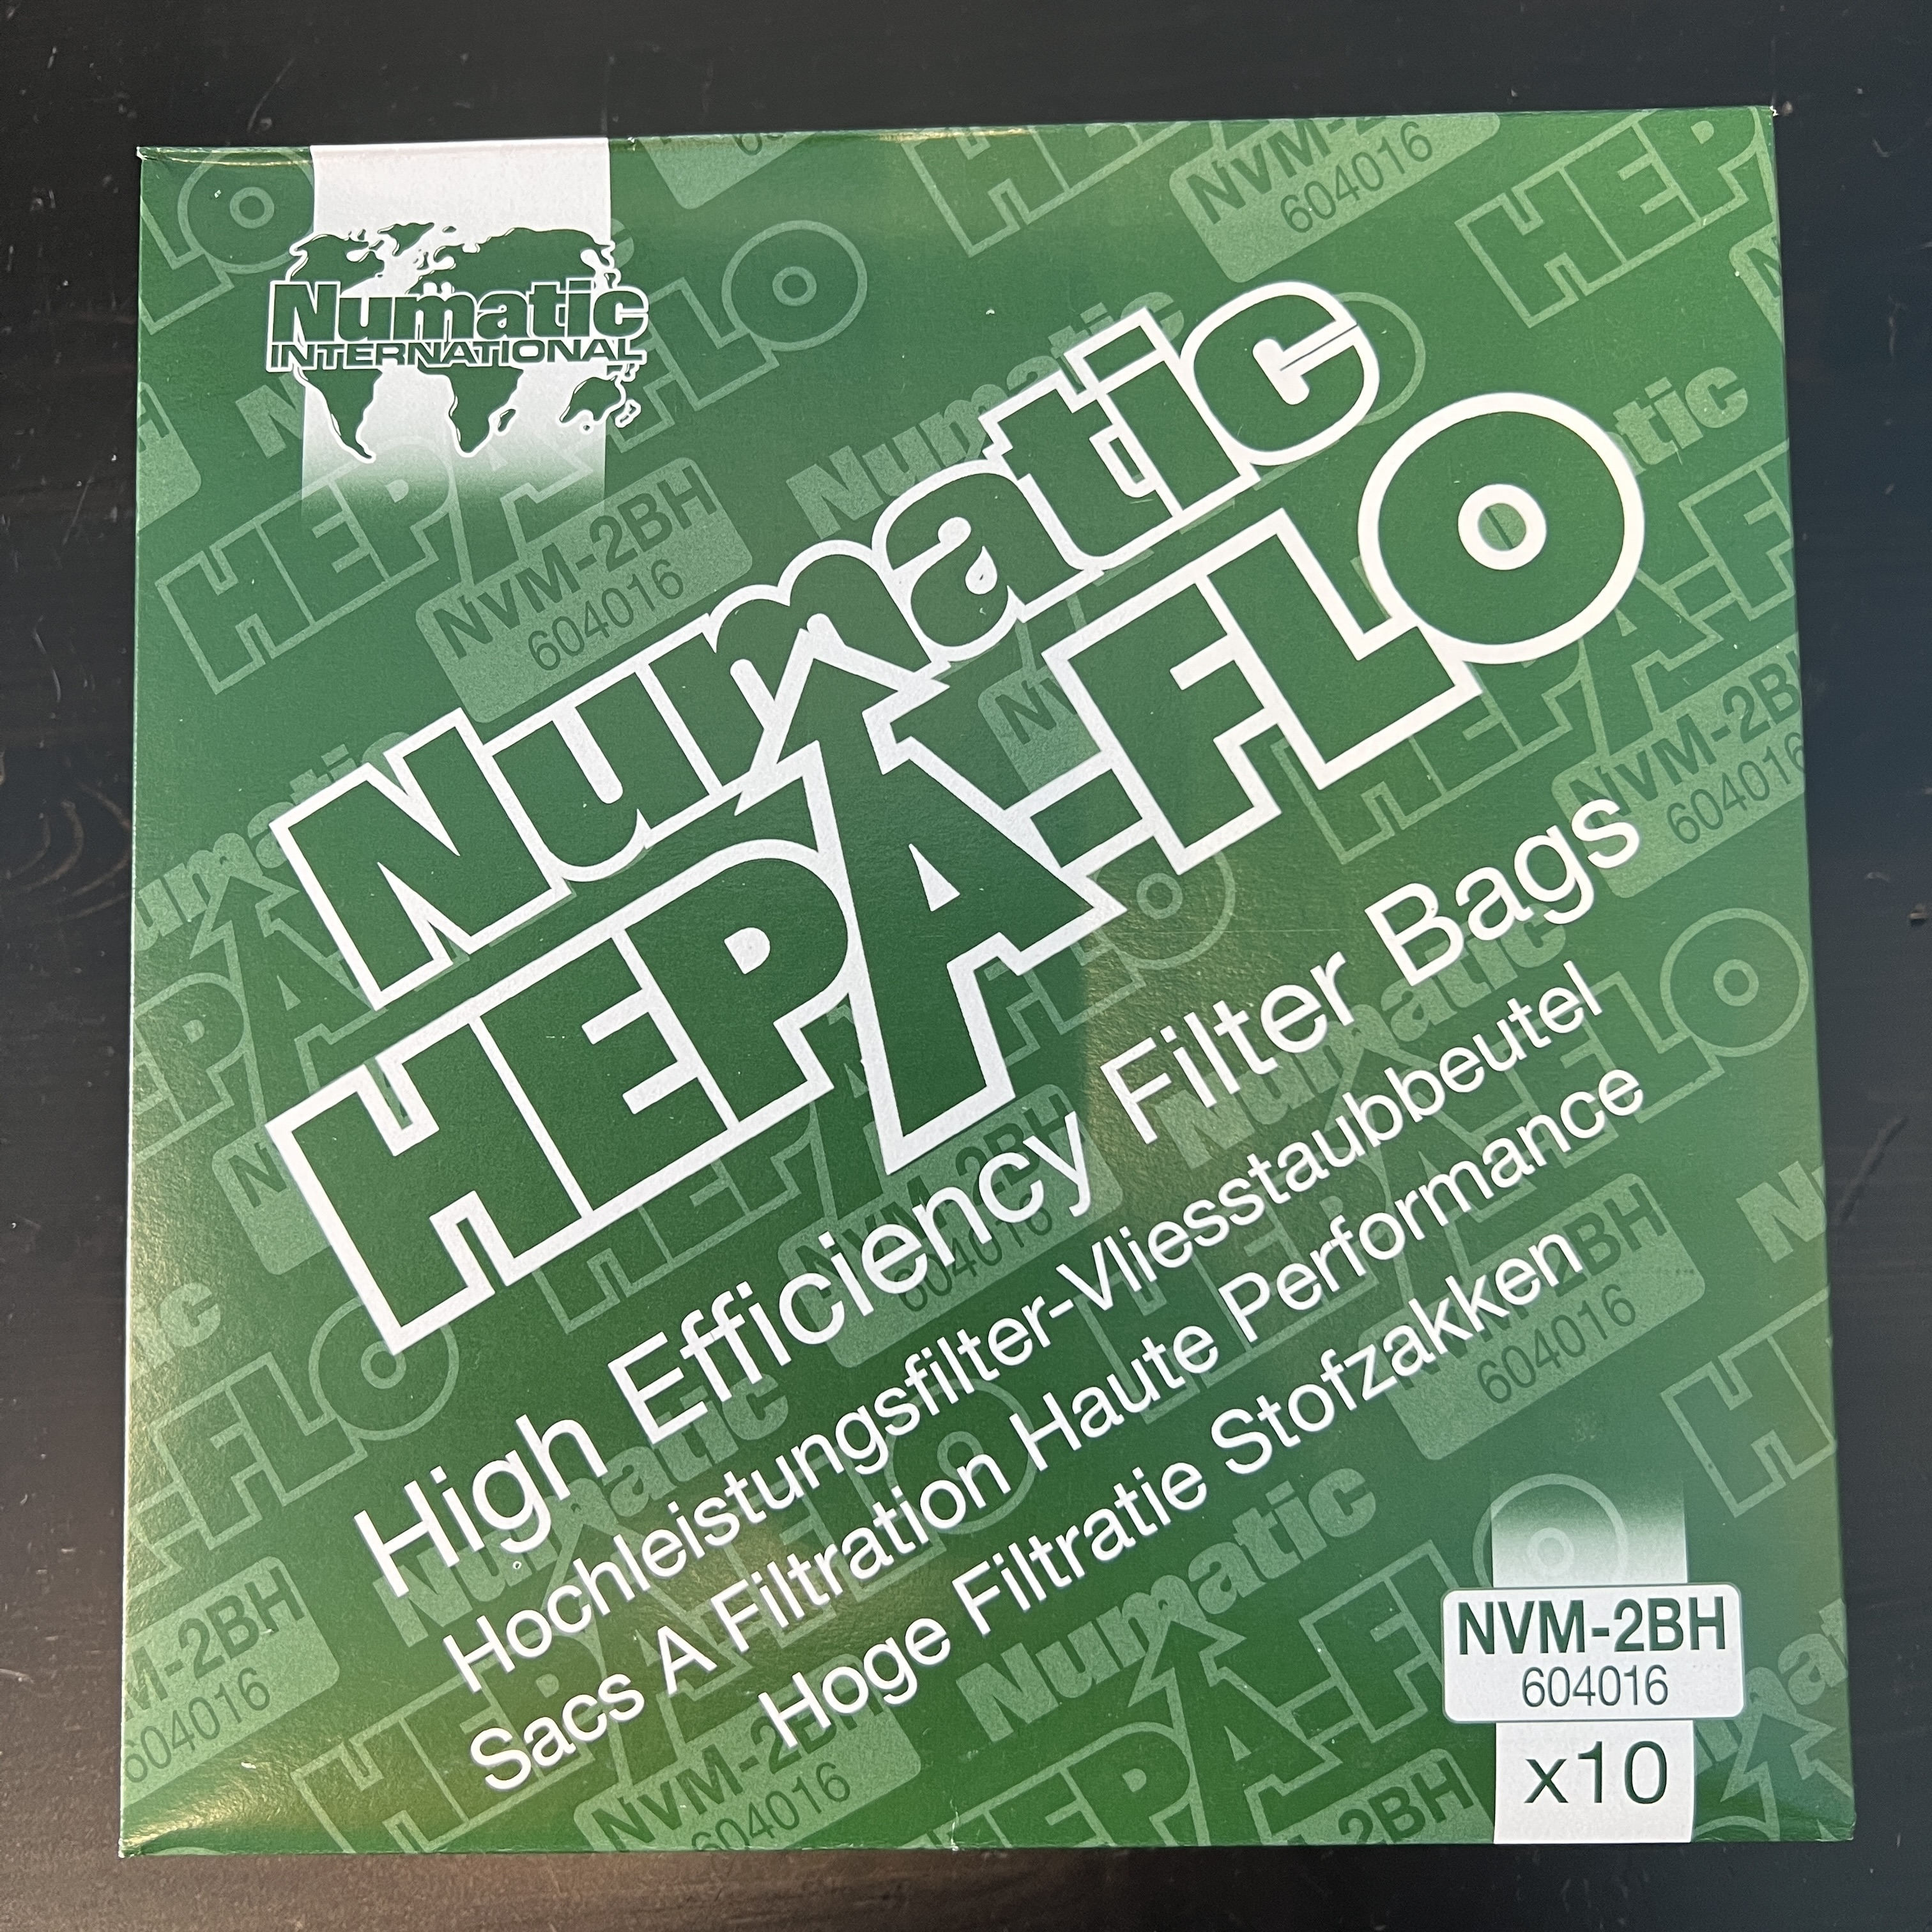 Hepa-Flo 604016 (NVM-2CH) 10 шт - мешки для пылесосов Numatic